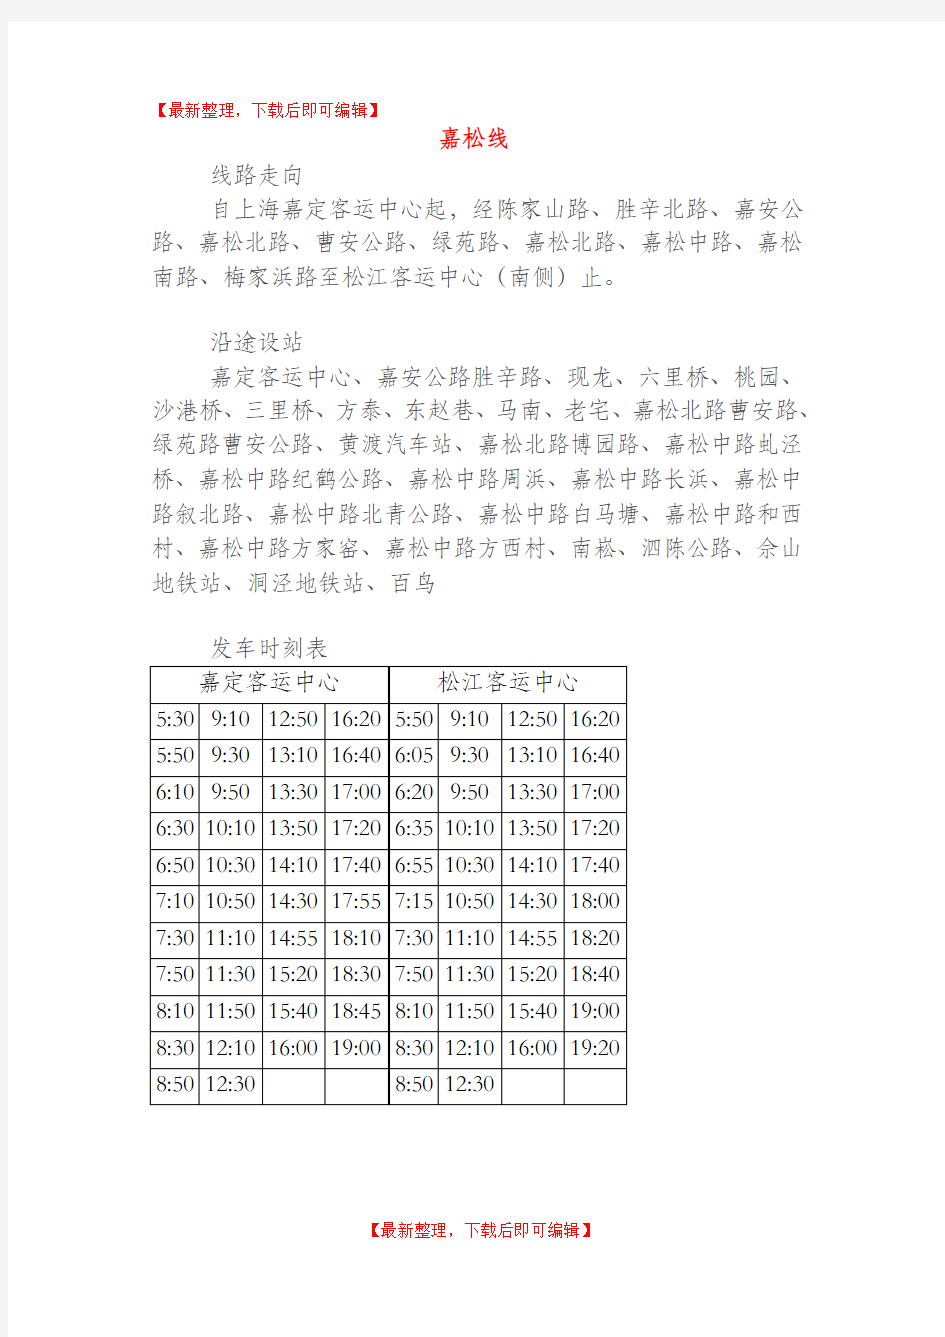 上海嘉松线时刻表(完整资料)